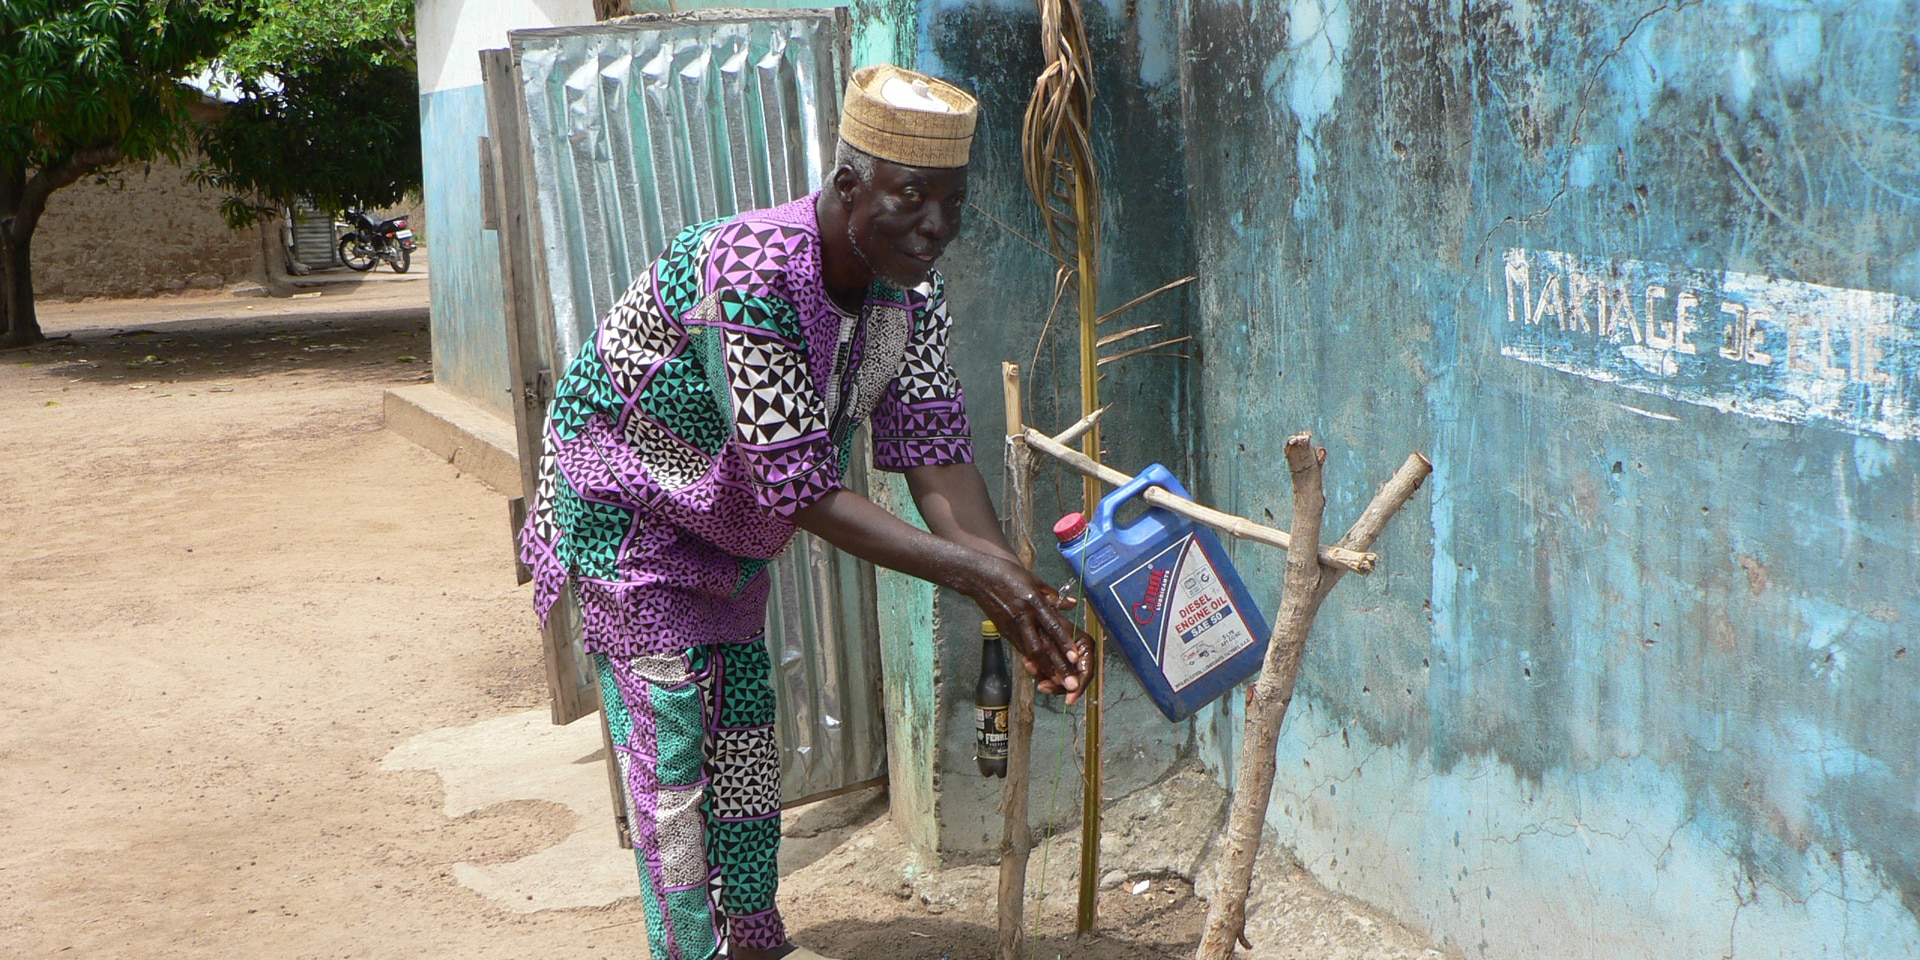 Benin: un uomo davanti a una casa si lava accuratamente le mani a un rubinetto improvvisato.